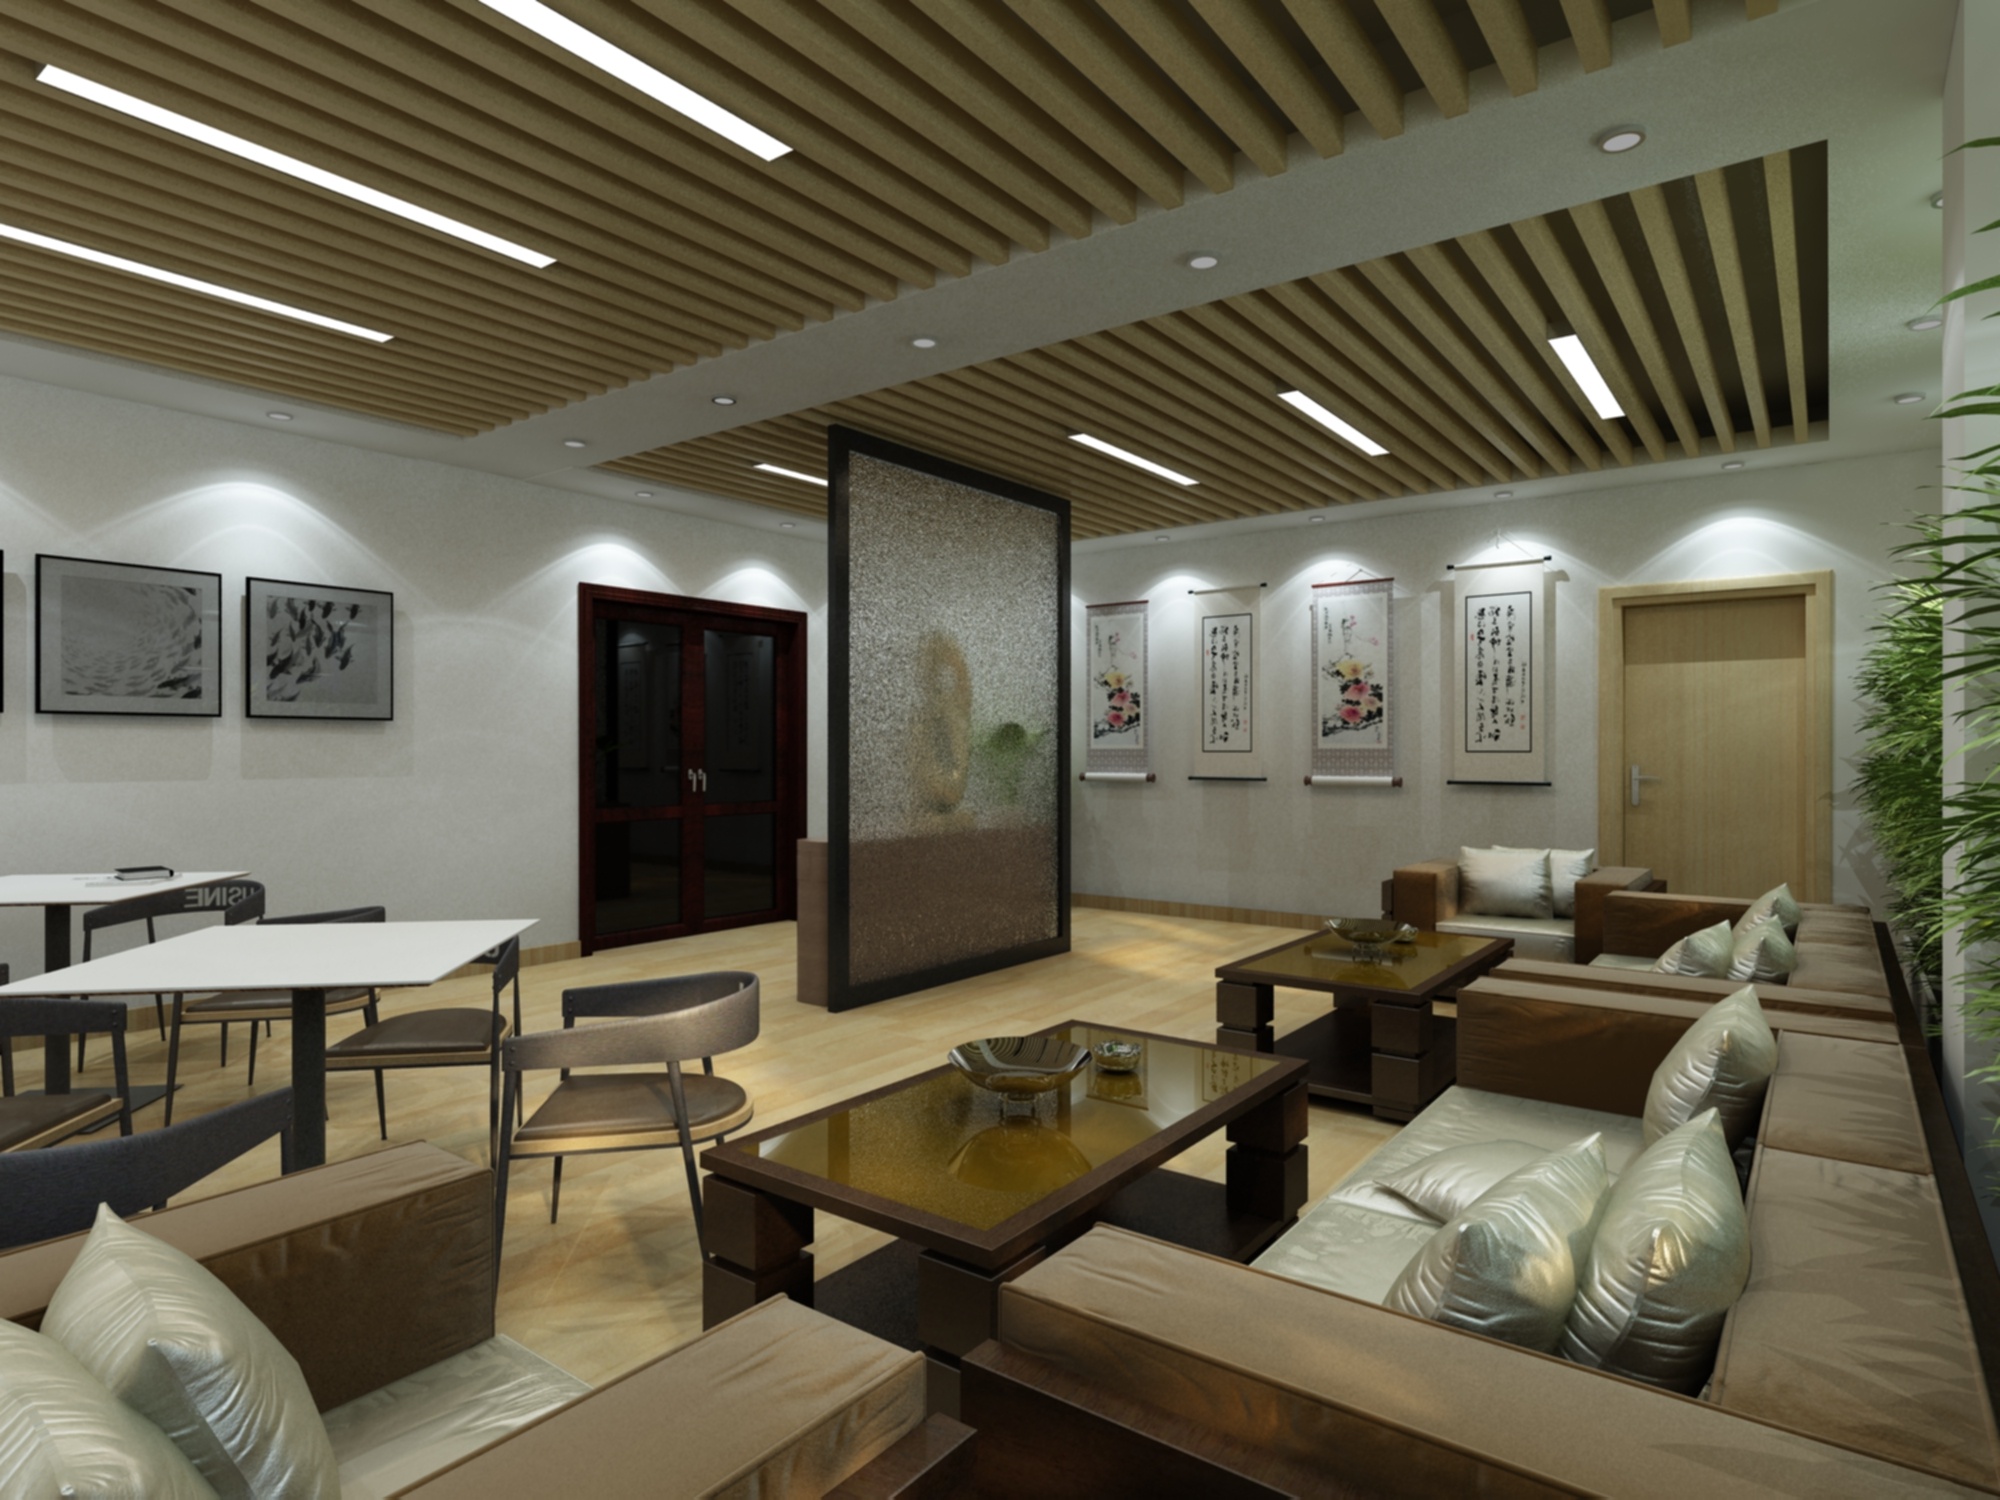 新中式休息区 - 效果图交流区-建E室内设计网